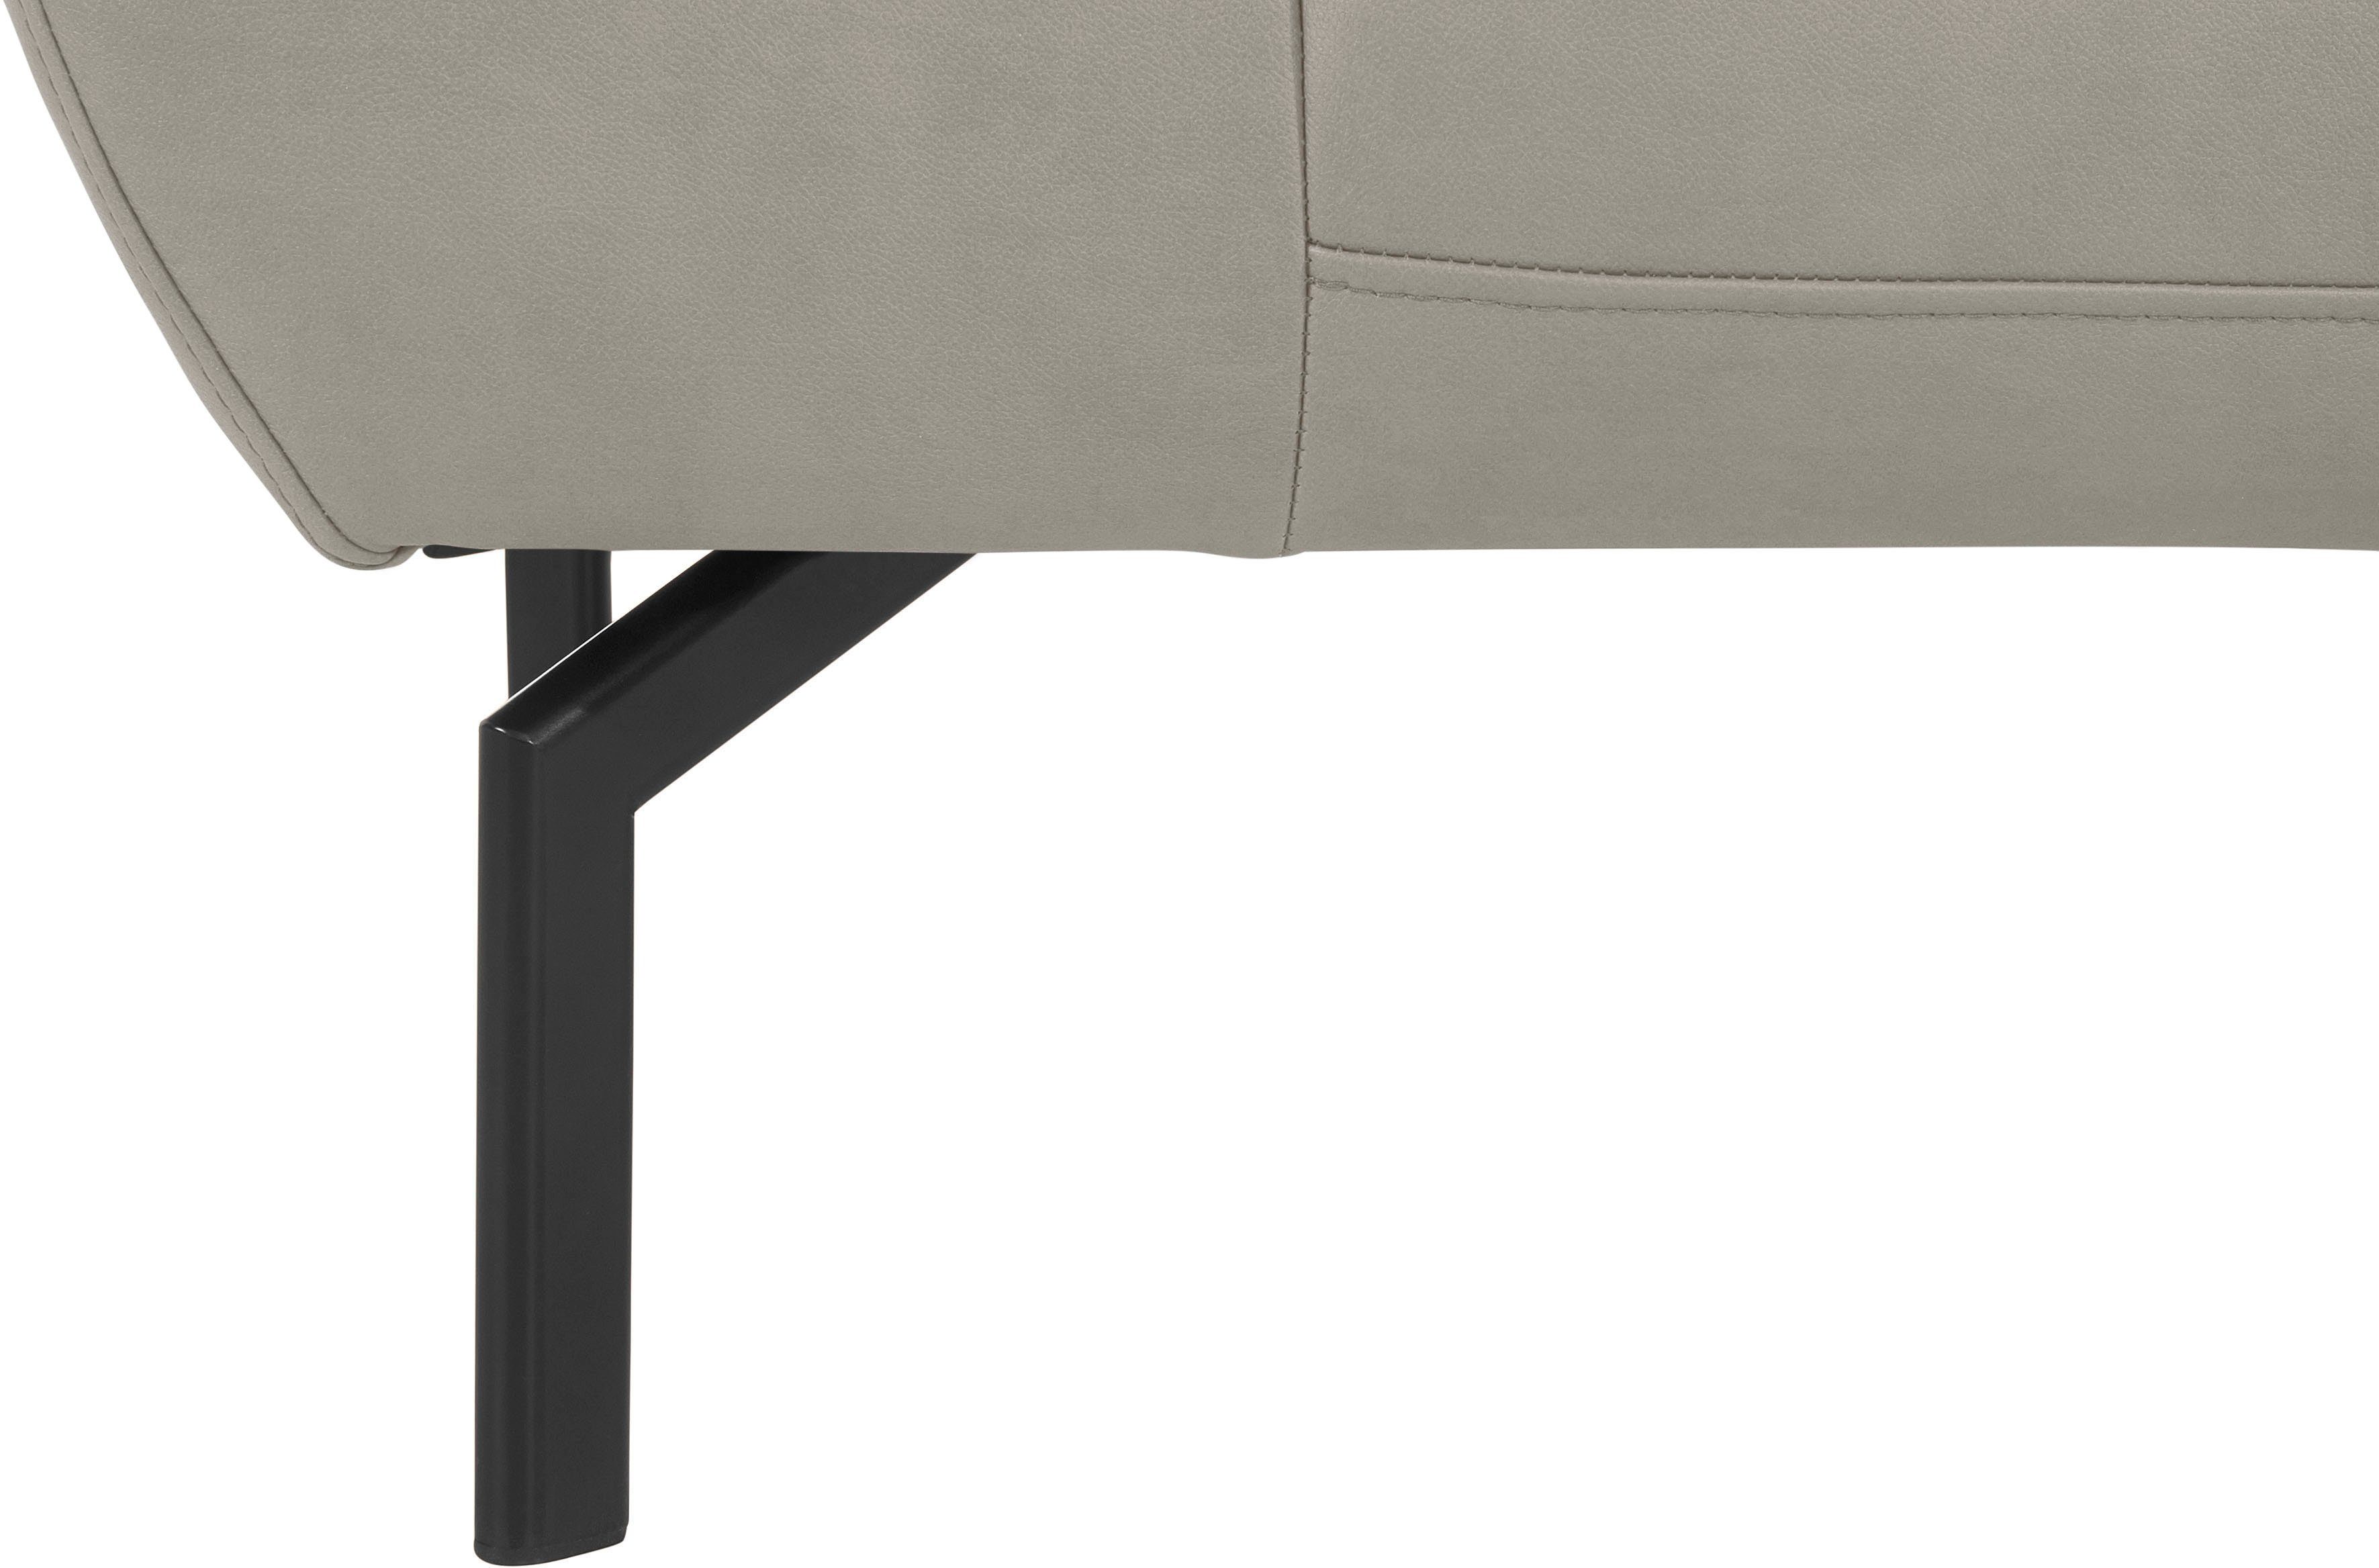 Style Luxus-Microfaser Trapino Luxus, wahlweise mit Places 2-Sitzer Rückenverstellung, in of Lederoptik